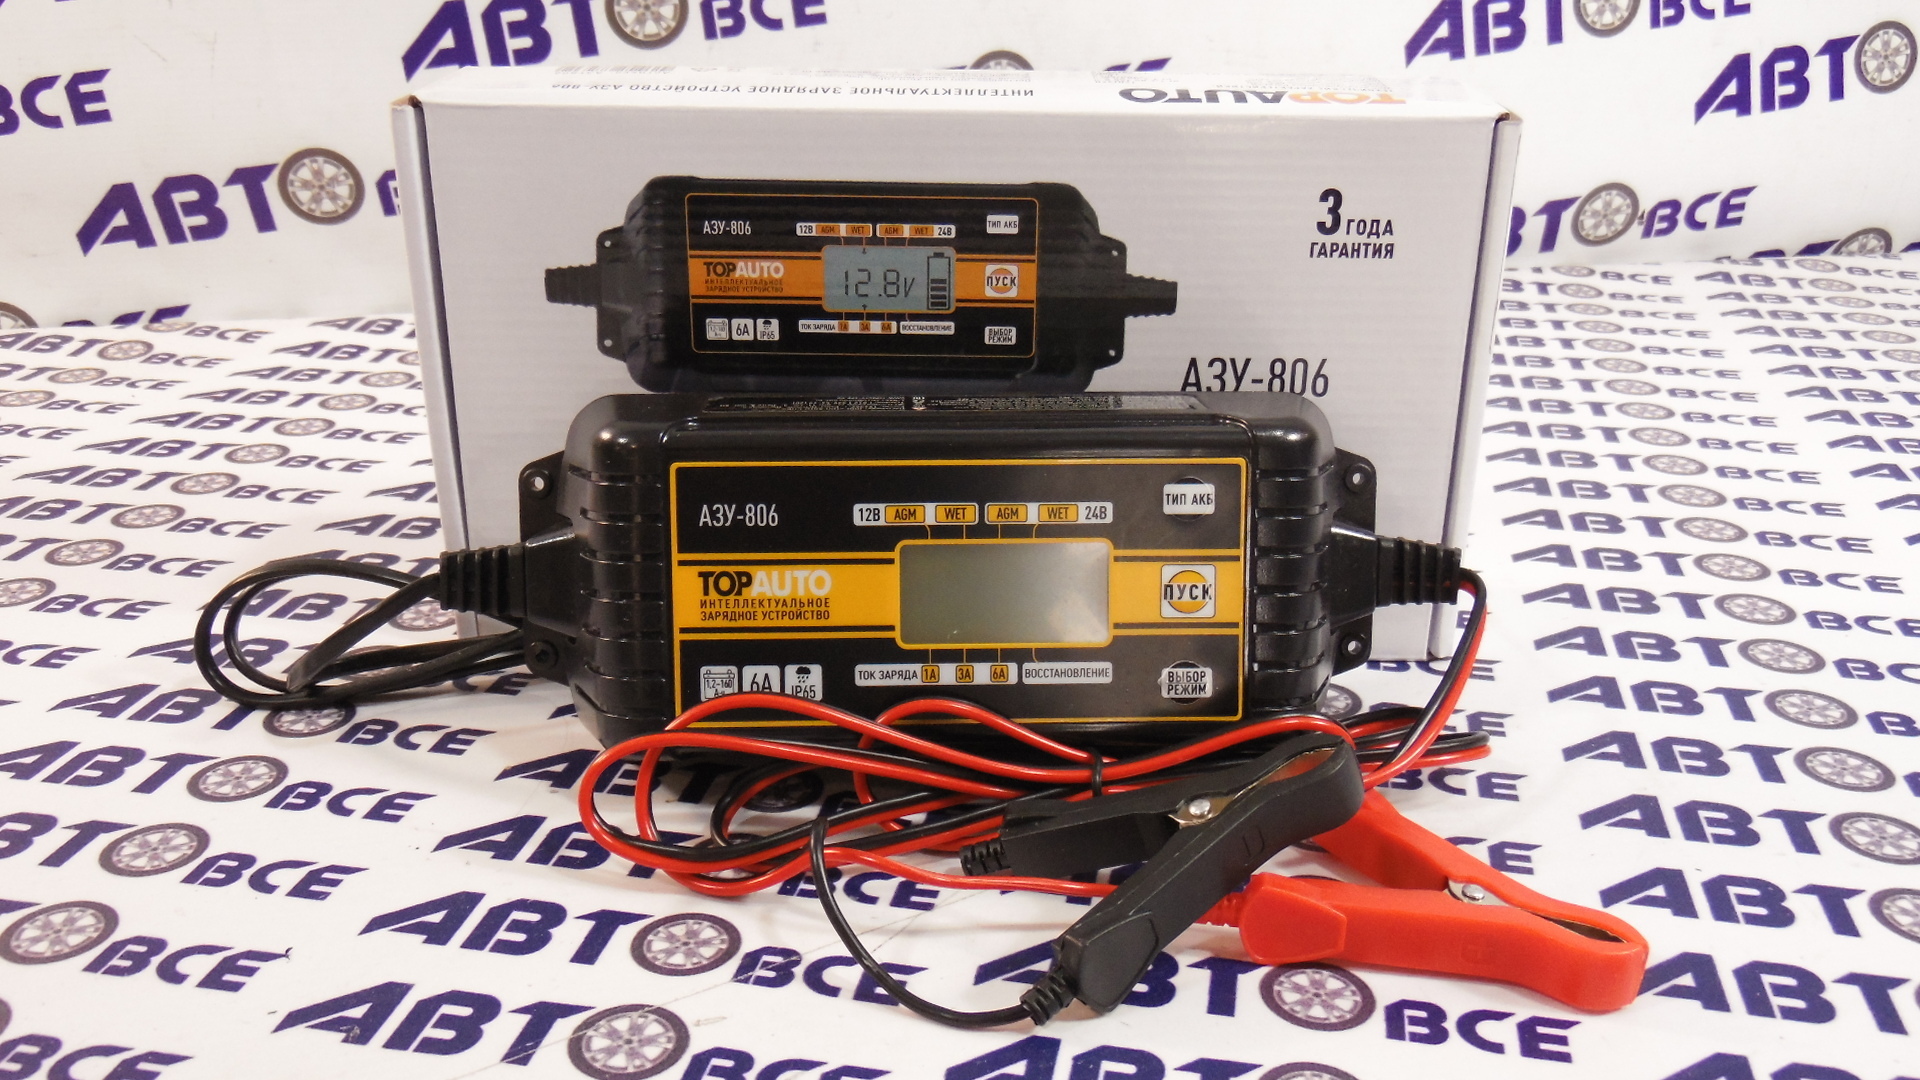 Зарядное устройство для АКБ 12-24V 6A  (автомат - с защитой) малое АЗУ-806 ТопАвто